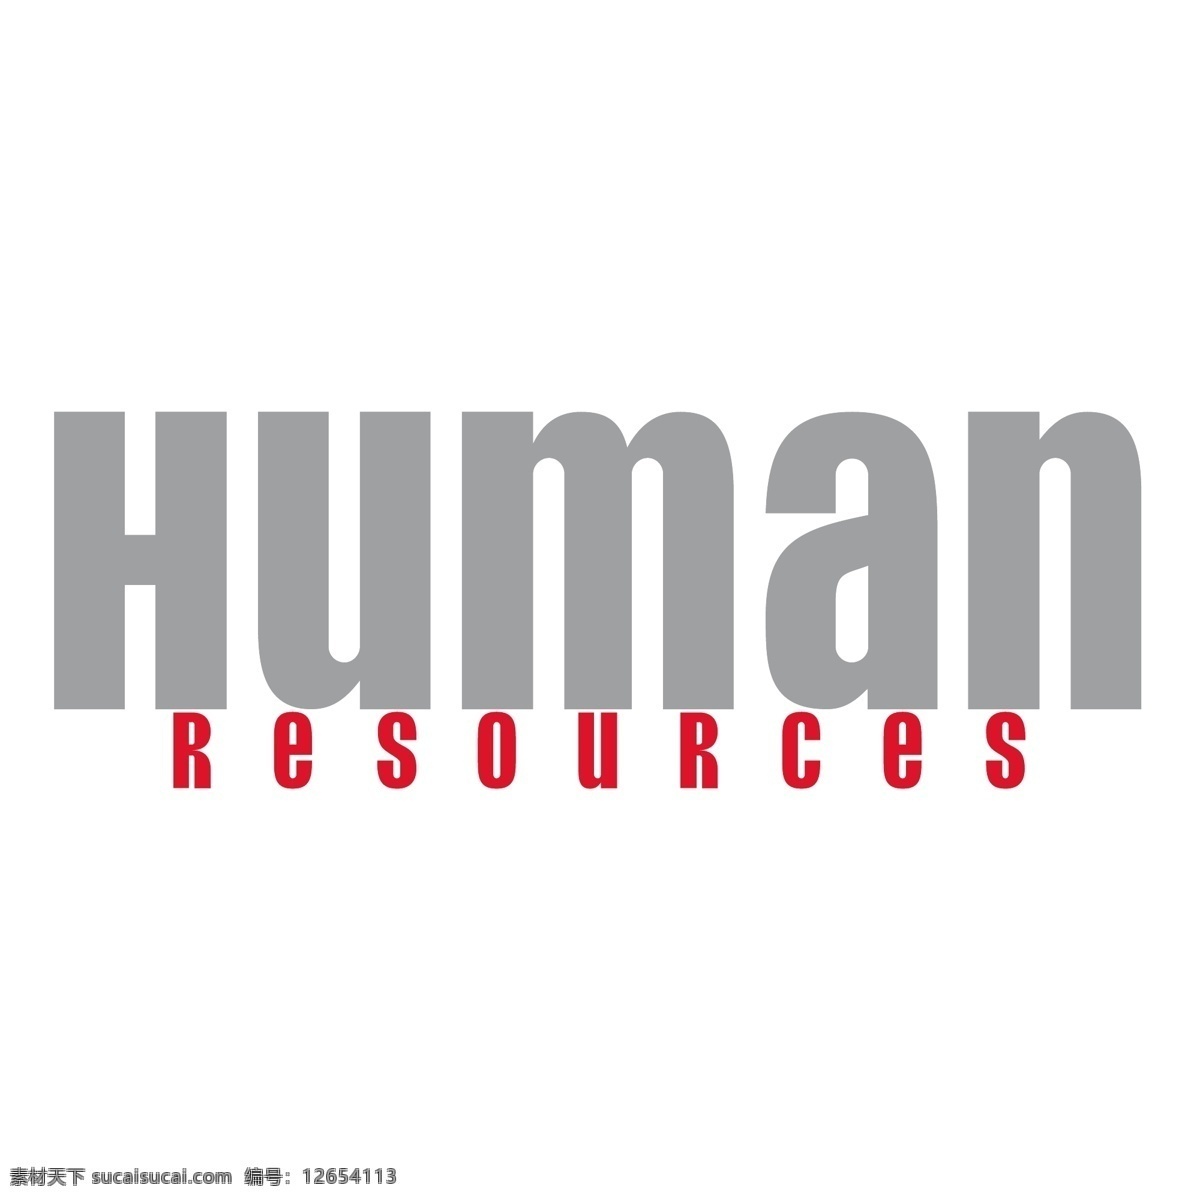 人力资源 资源 人类 人力资源0 矢量图 其他矢量图